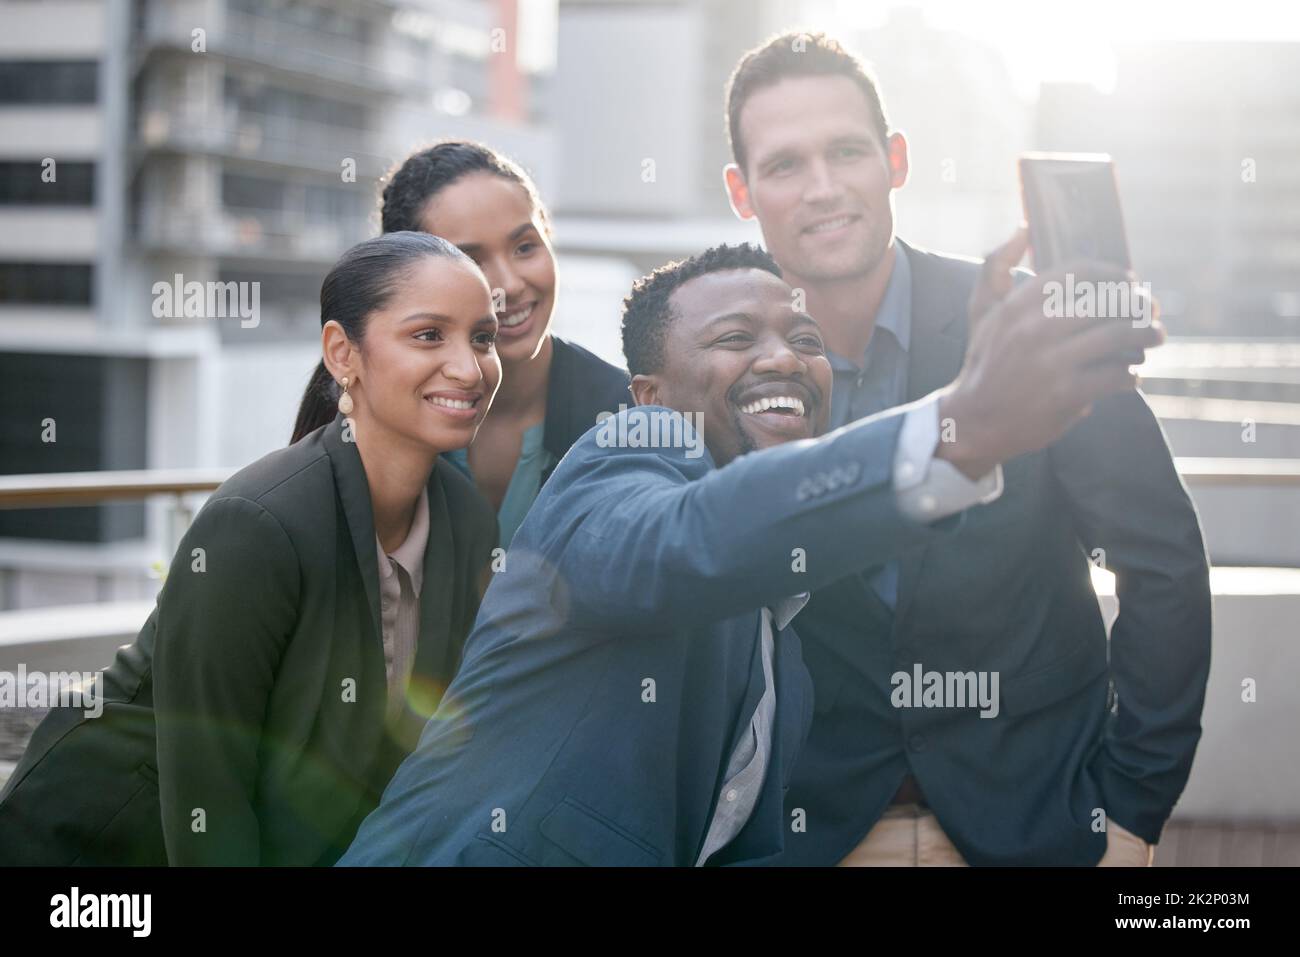 Conseguir que el espíritu de equipo vaya. Foto de un grupo de empresarios tomando un selfie contra un fondo de la ciudad. Foto de stock